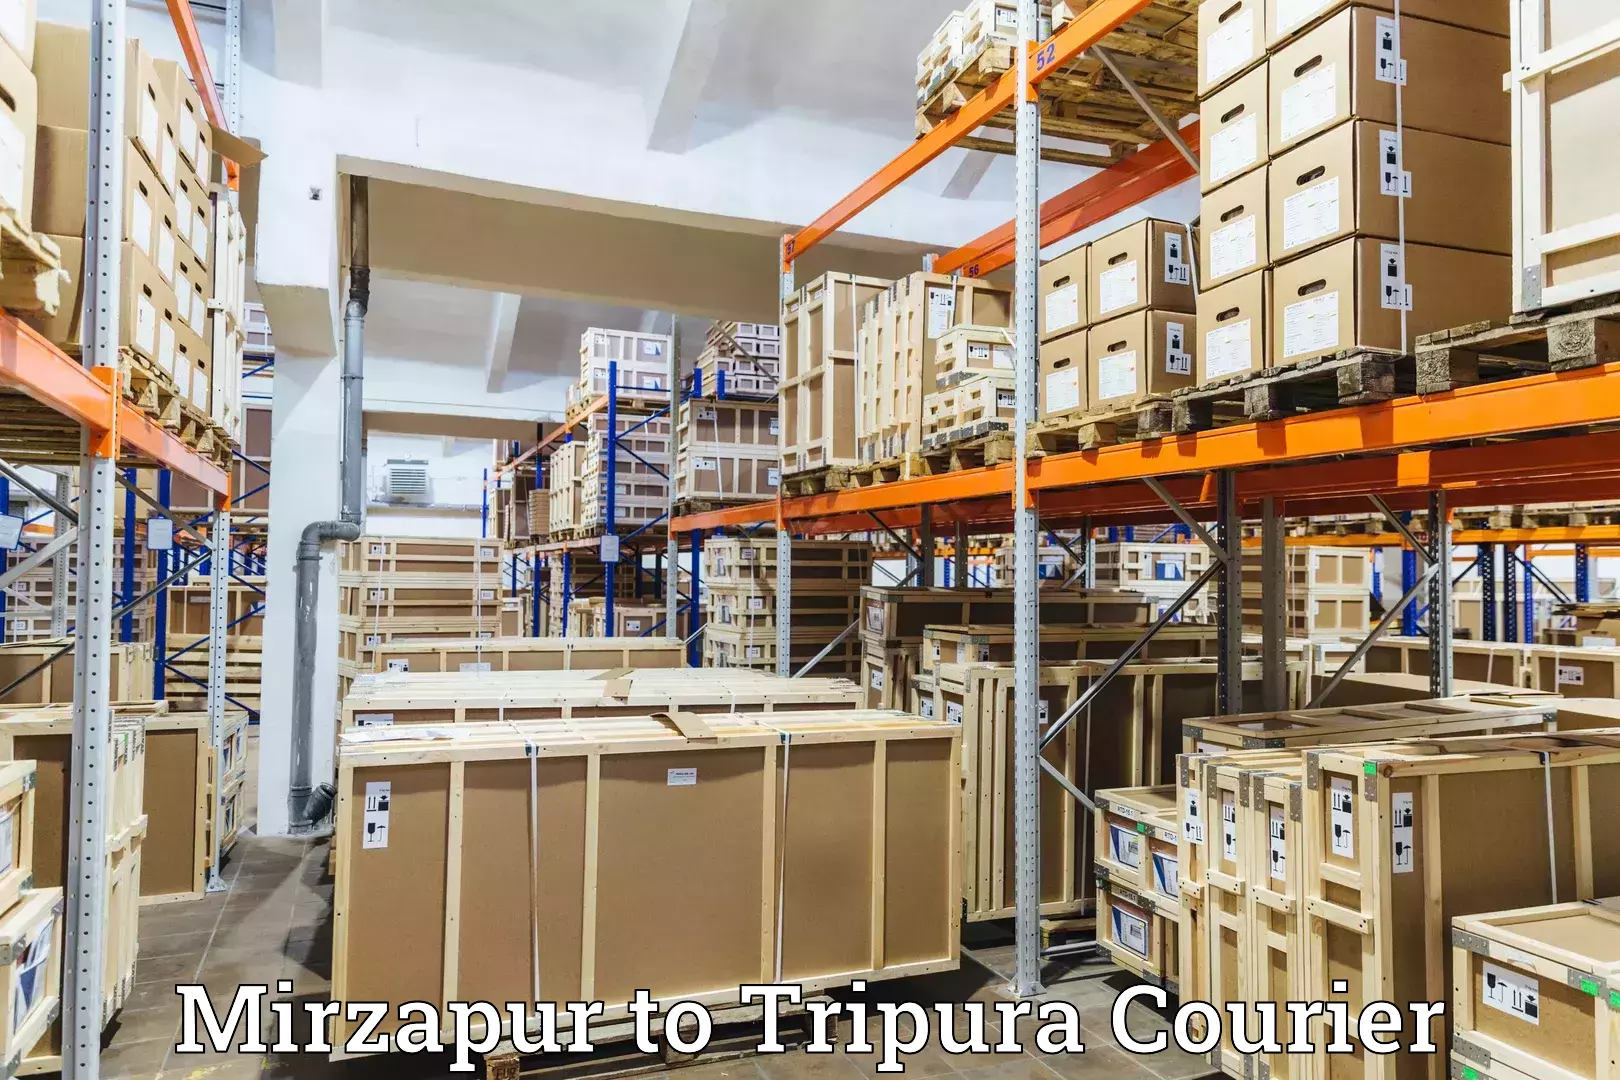 Smart logistics strategies Mirzapur to Kailashahar